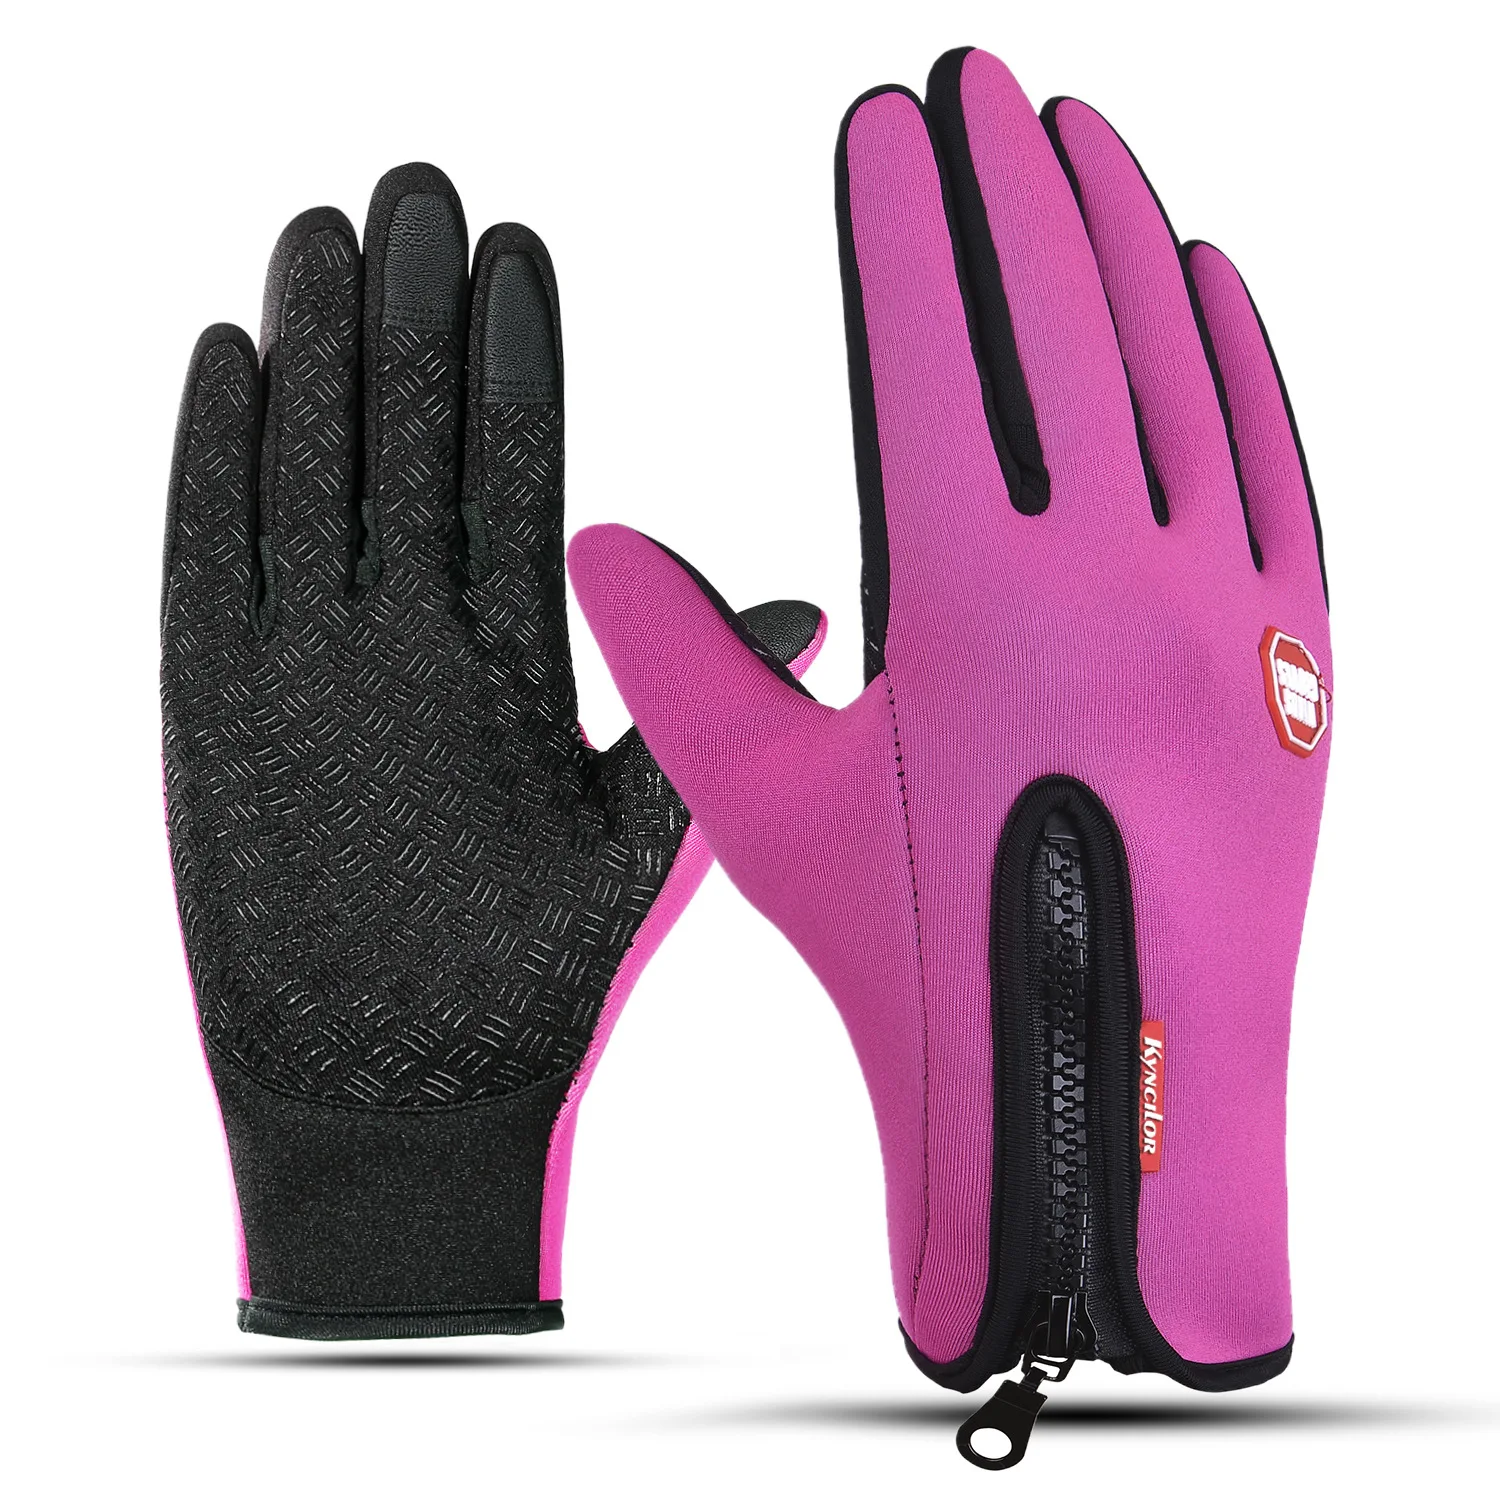 Зимние модели взрывов для активного отдыха на открытом воздухе зимние спортивные перчатки для гольфа с сенсорным экраном теплые перчатки альпинизм, лыжи nan nv перчатки